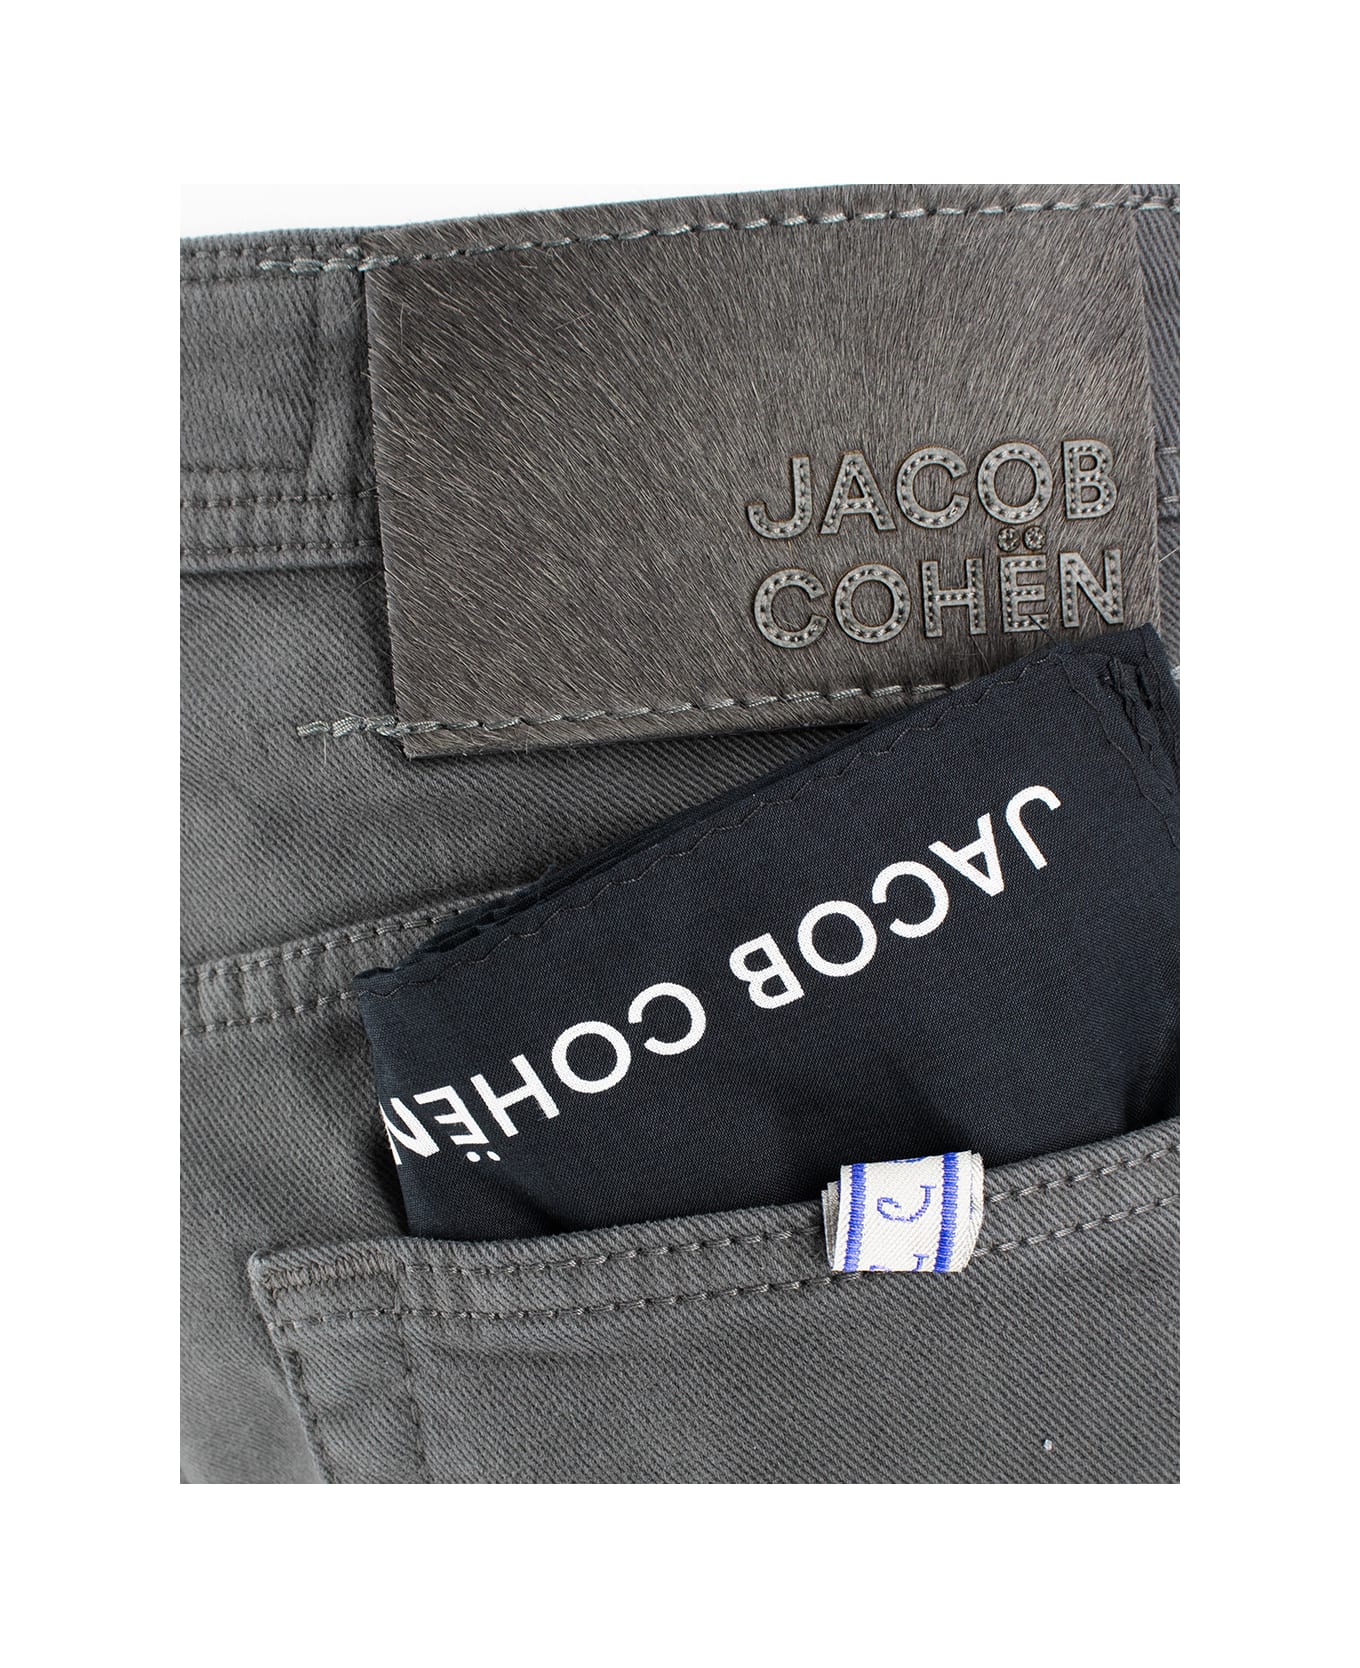 Jacob Cohen Jeans - C35